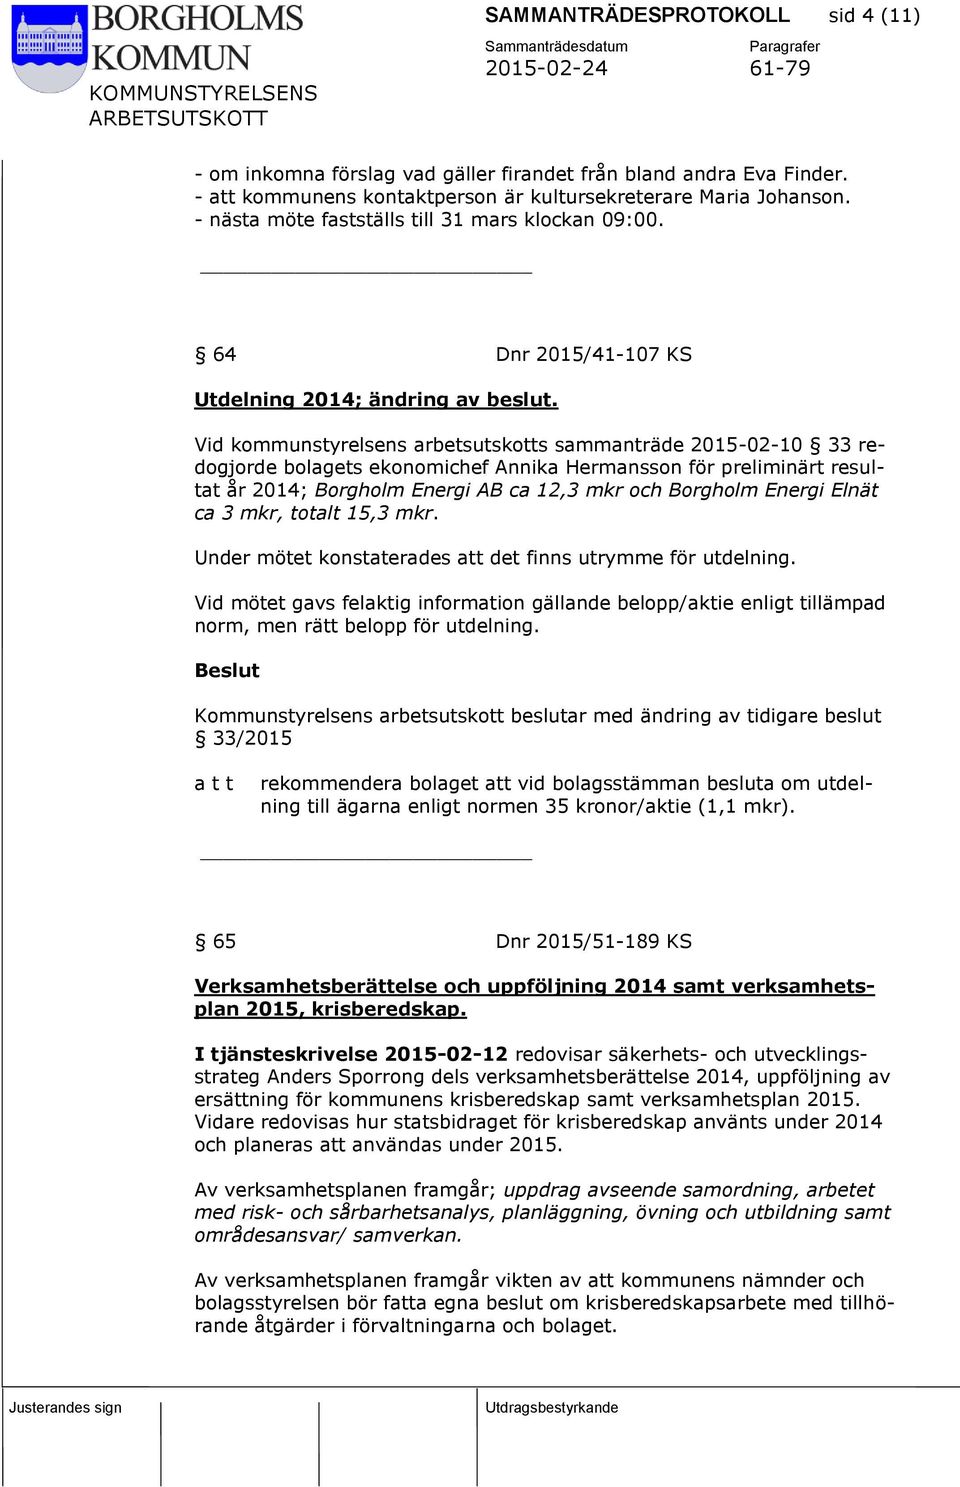 Vid kommunstyrelsens arbetsutskotts sammanträde 2015-02-10 33 redogjorde bolagets ekonomichef Annika Hermansson för preliminärt resultat år 2014; Borgholm Energi AB ca 12,3 mkr och Borgholm Energi